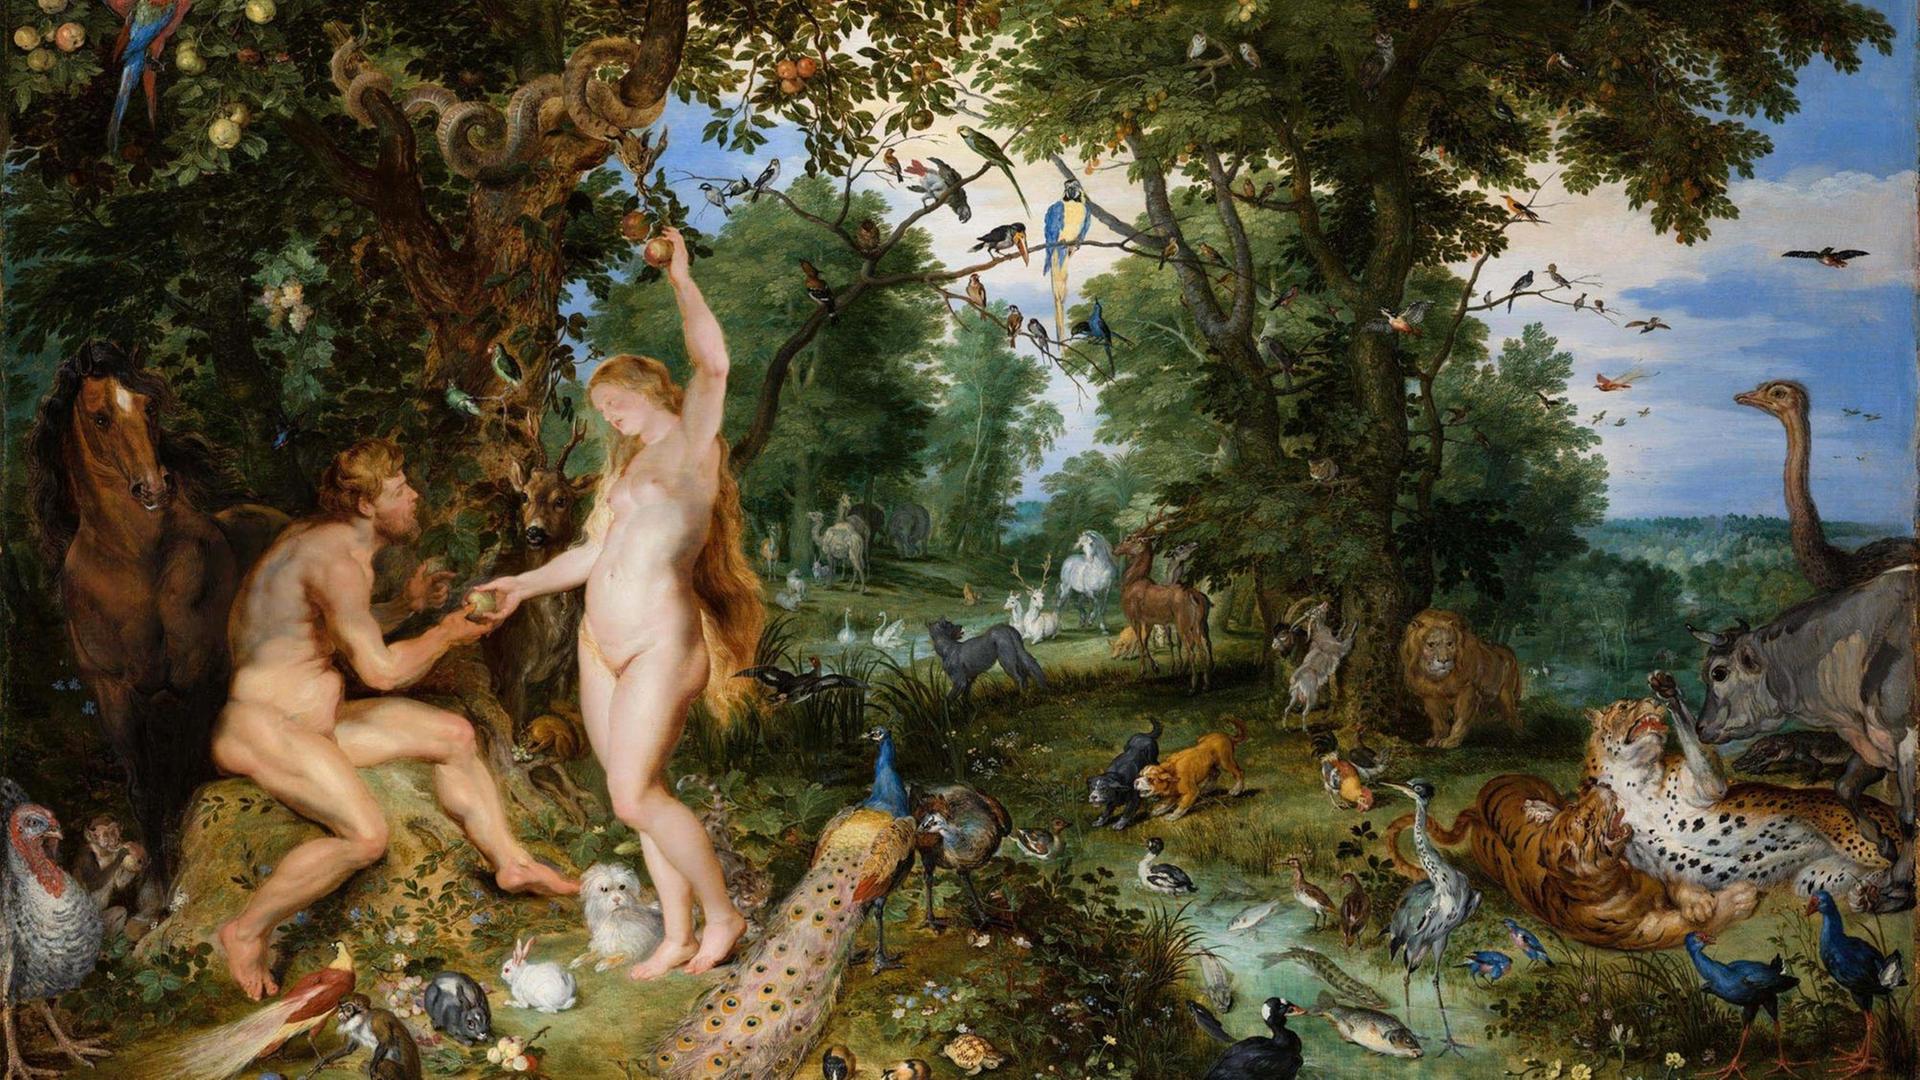 Gemälde "Der Garten Eden mit dem Sündenfall" um 1615, vom flämischen Maler Jan the Elder Brueghel.